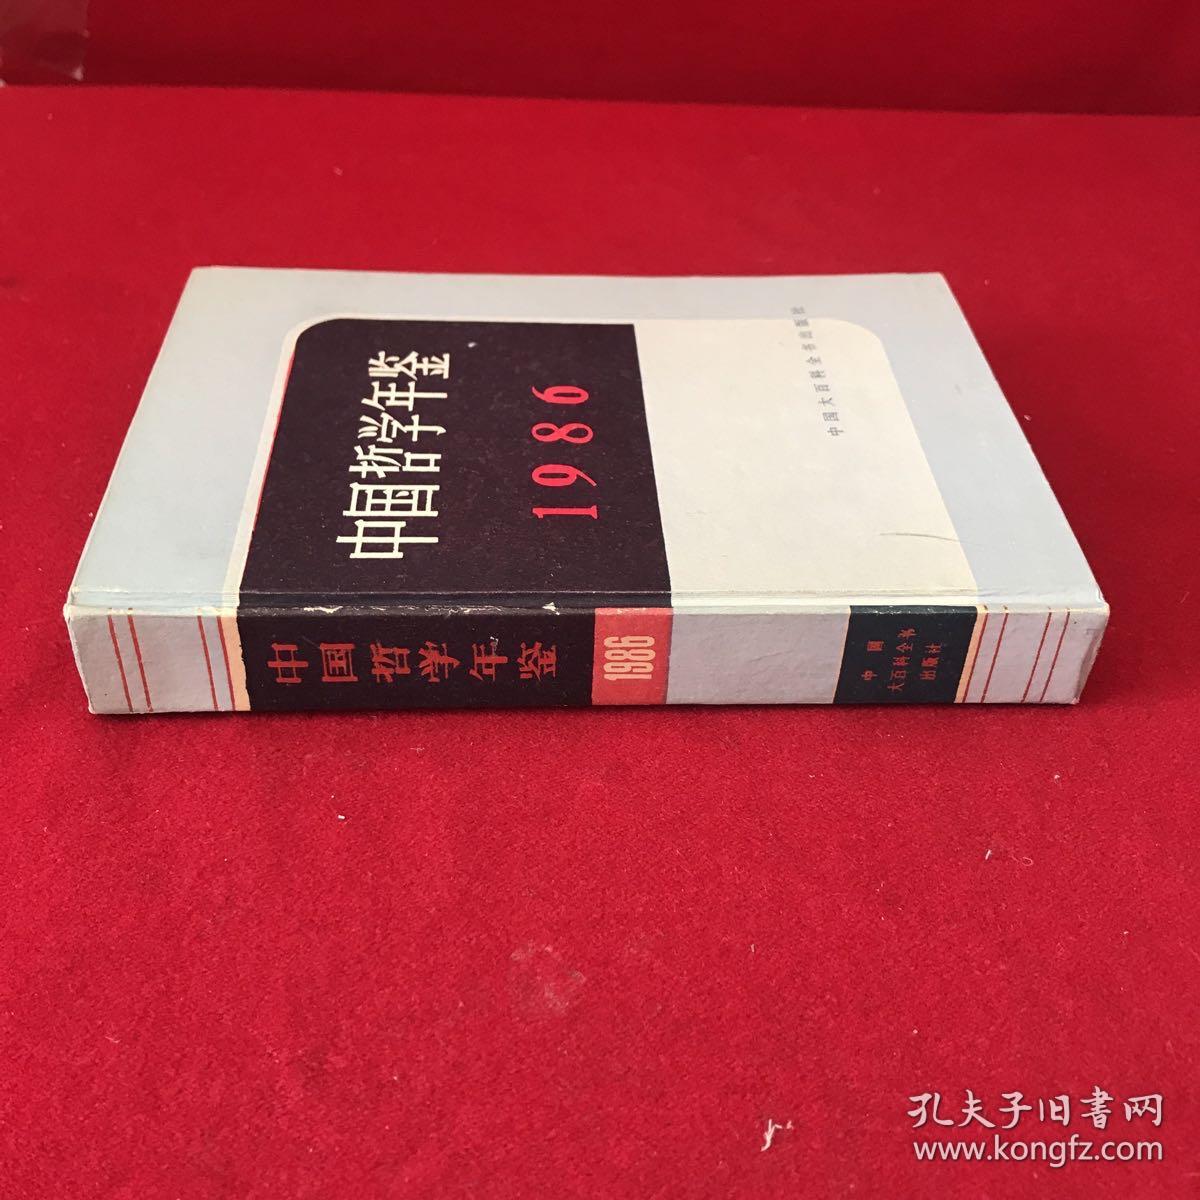 中国哲学年鉴1986